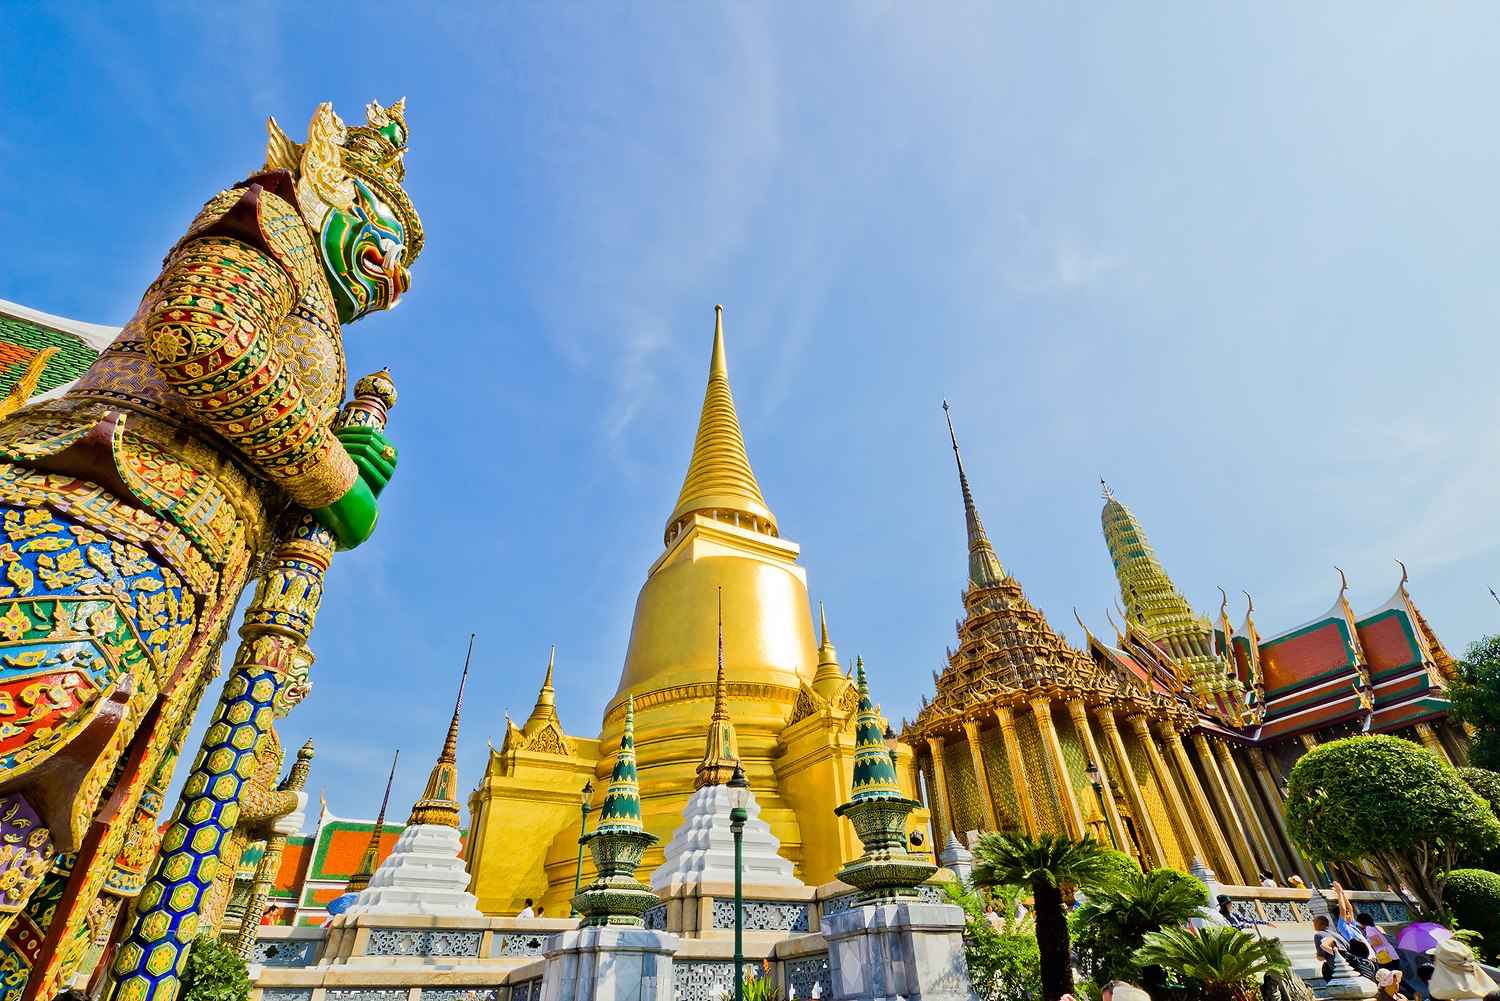 Du lịch Thái Lan: Bangkok - Pattaya 5 ngày bay Air Asia